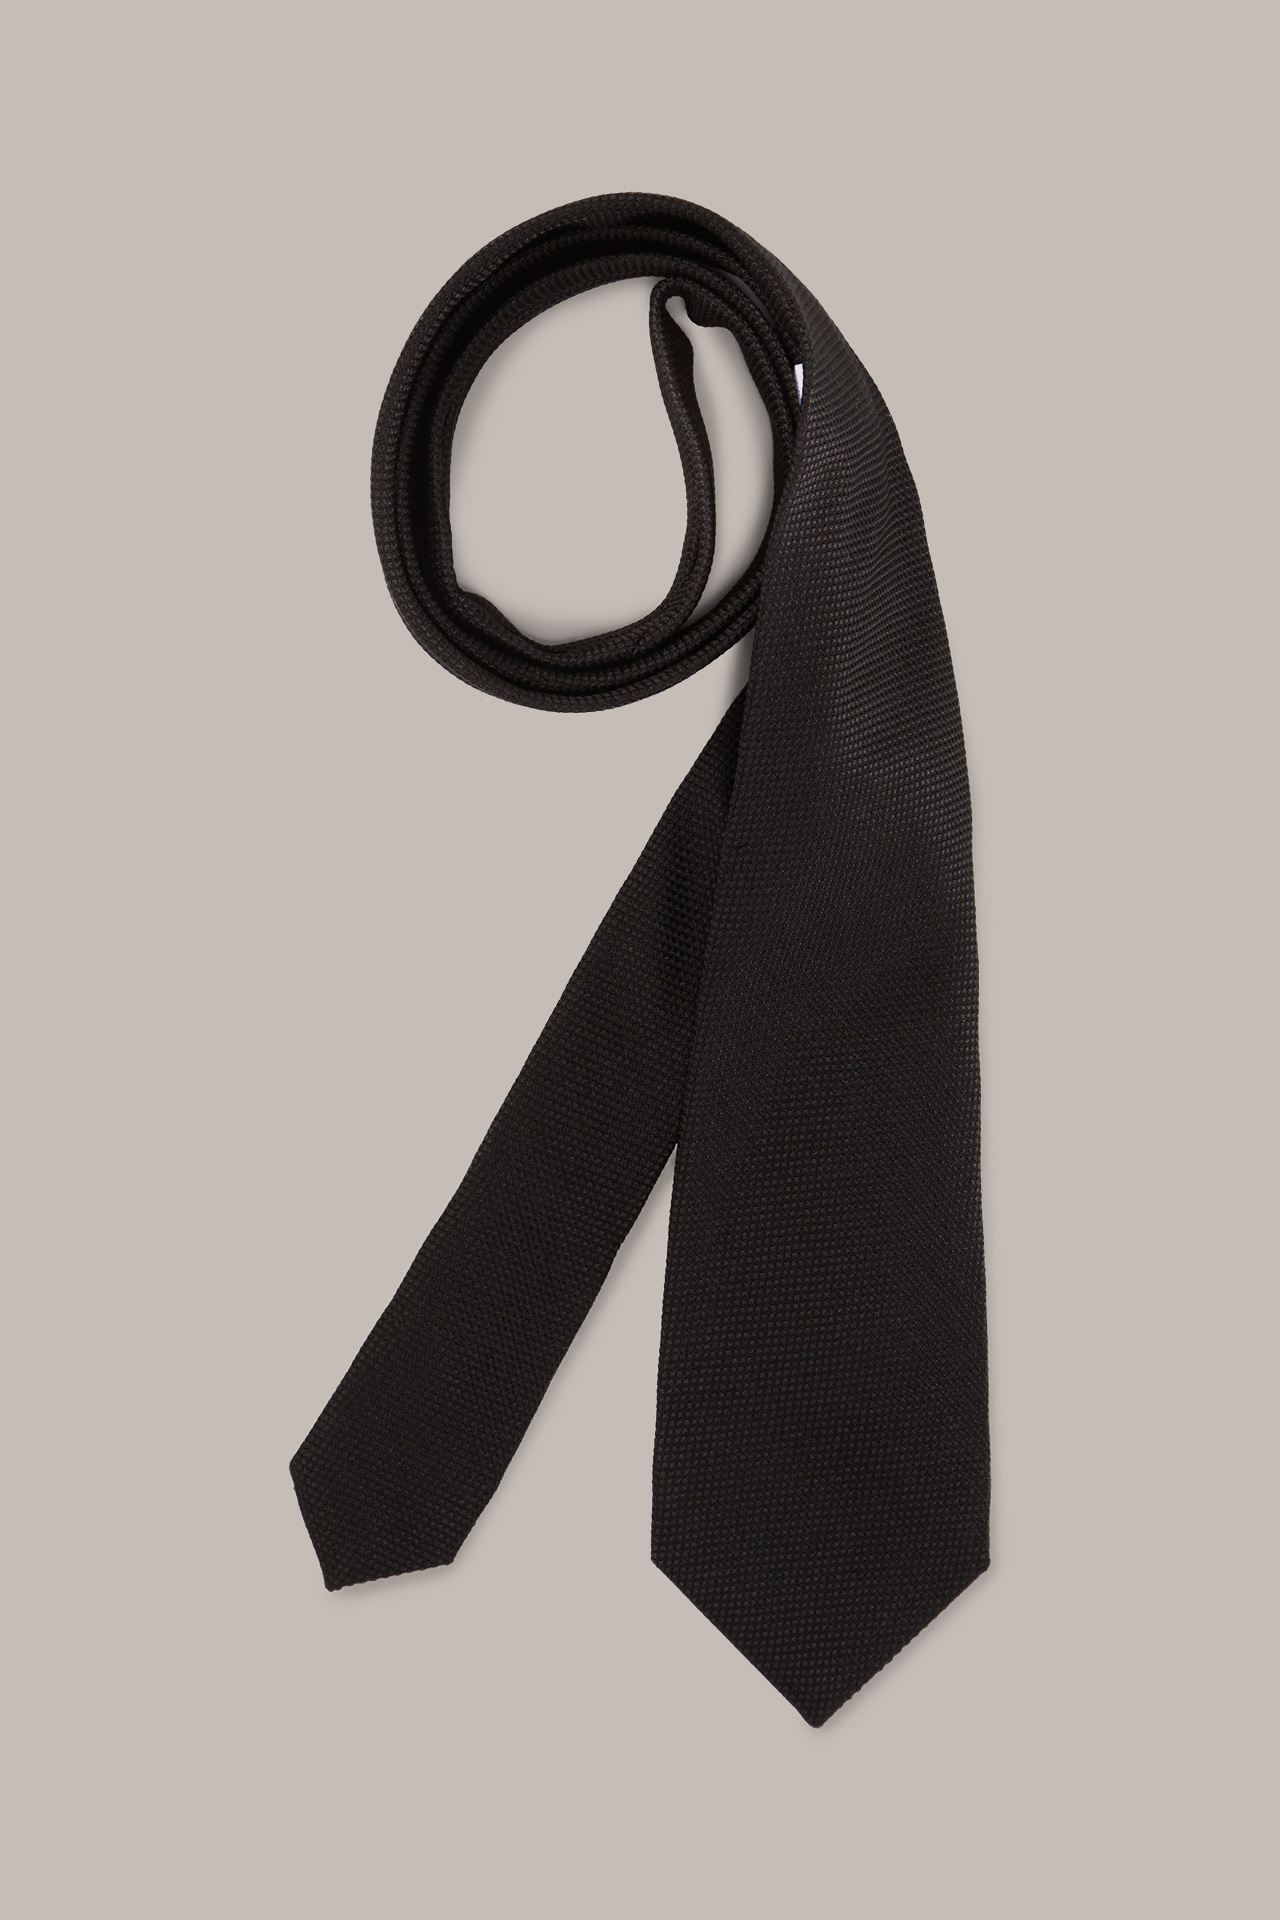 Seiden-Krawatte mit Baumwolle in Schwarz gemustert